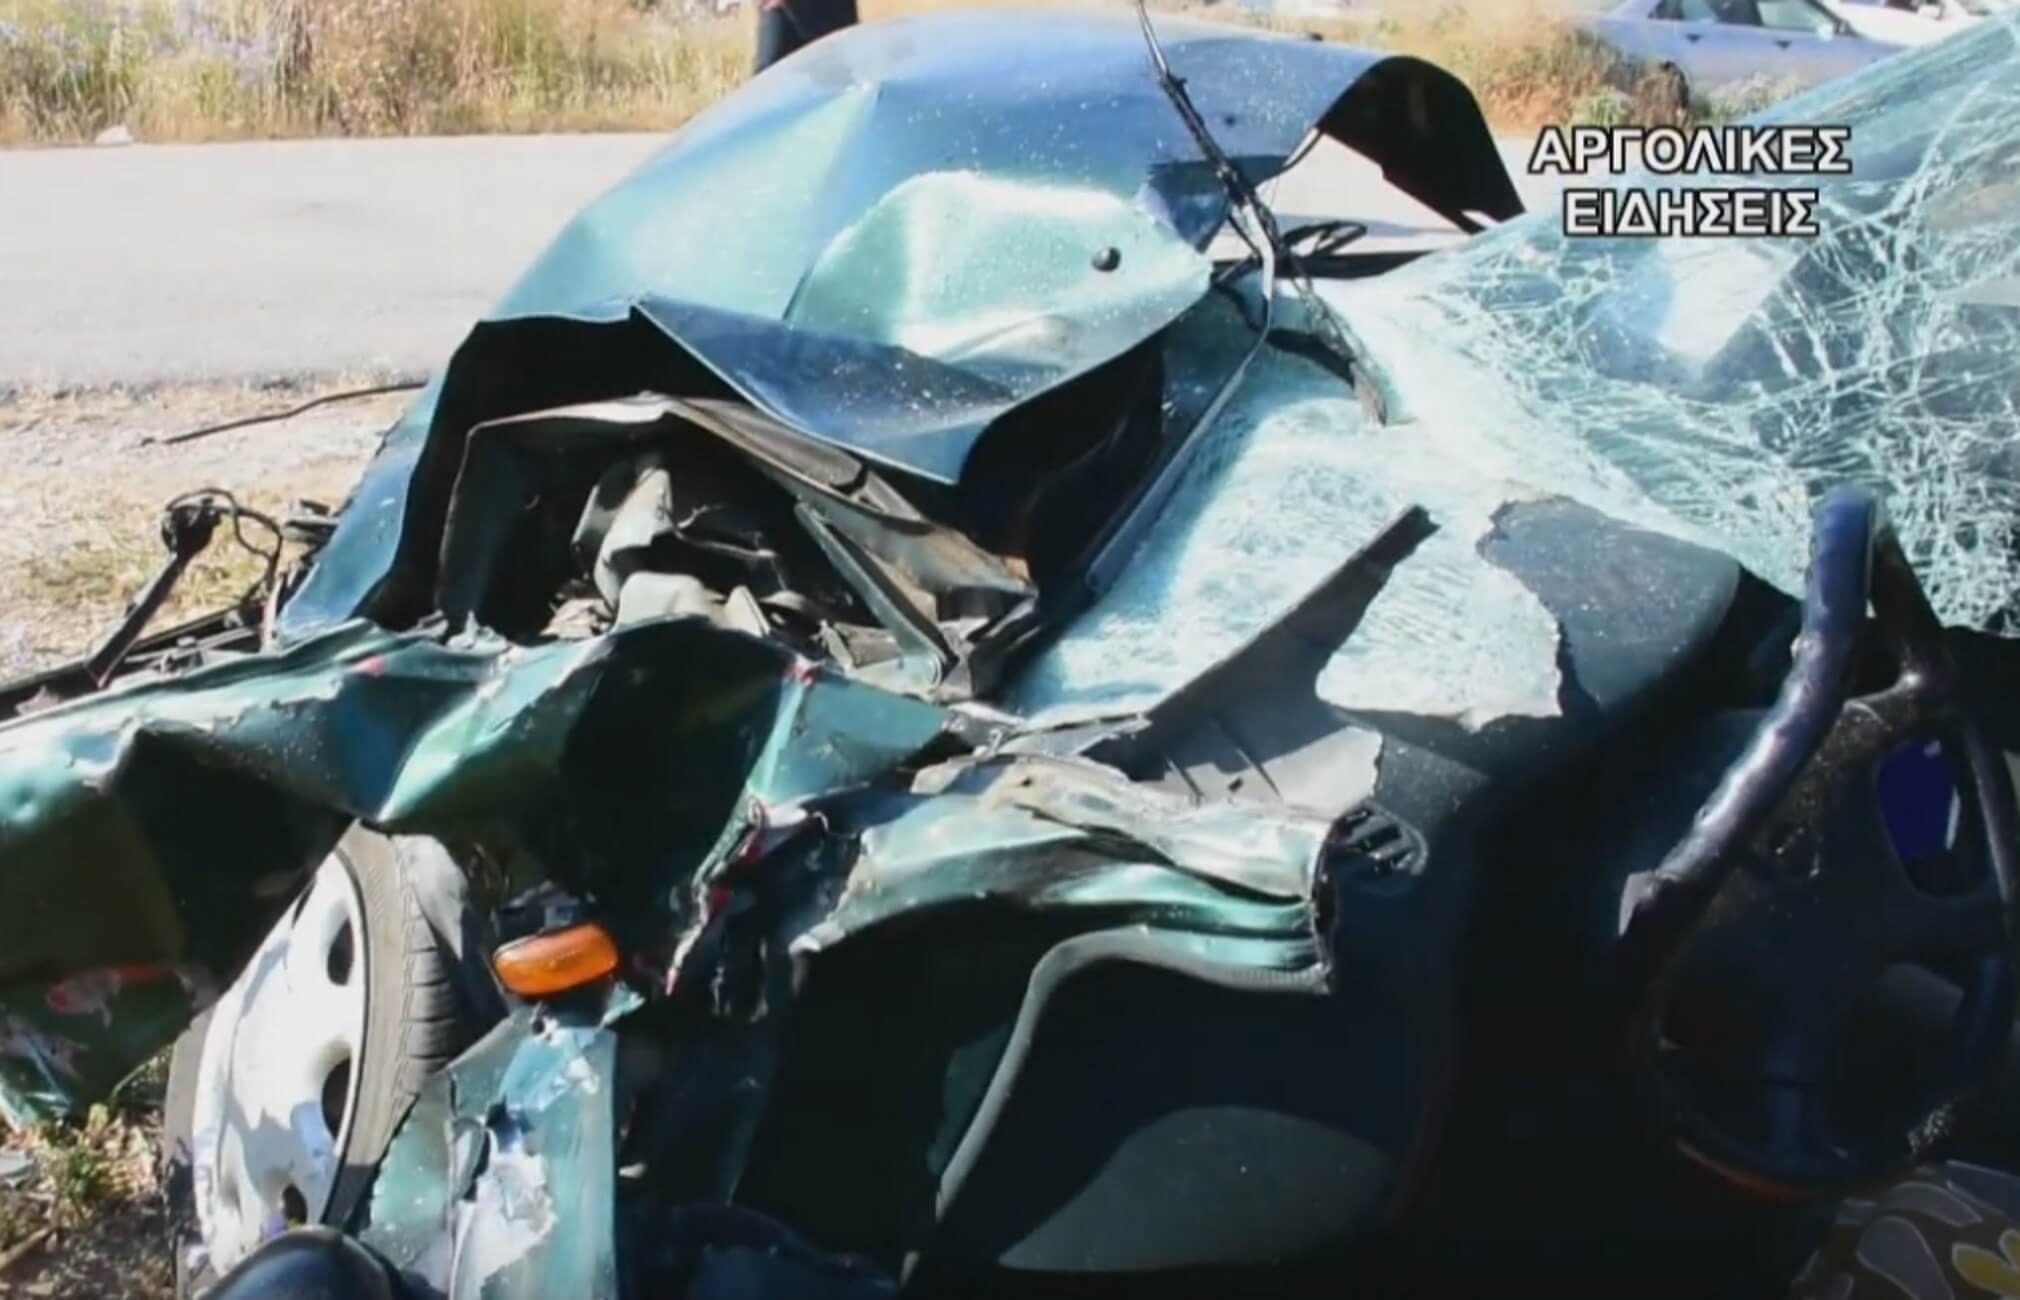 Αργολίδα: Νεκρός οδηγός μέσα σε αυτή την άμορφη μάζα σιδερικών – Αυτοψία μετά το φοβερό τροχαίο – video